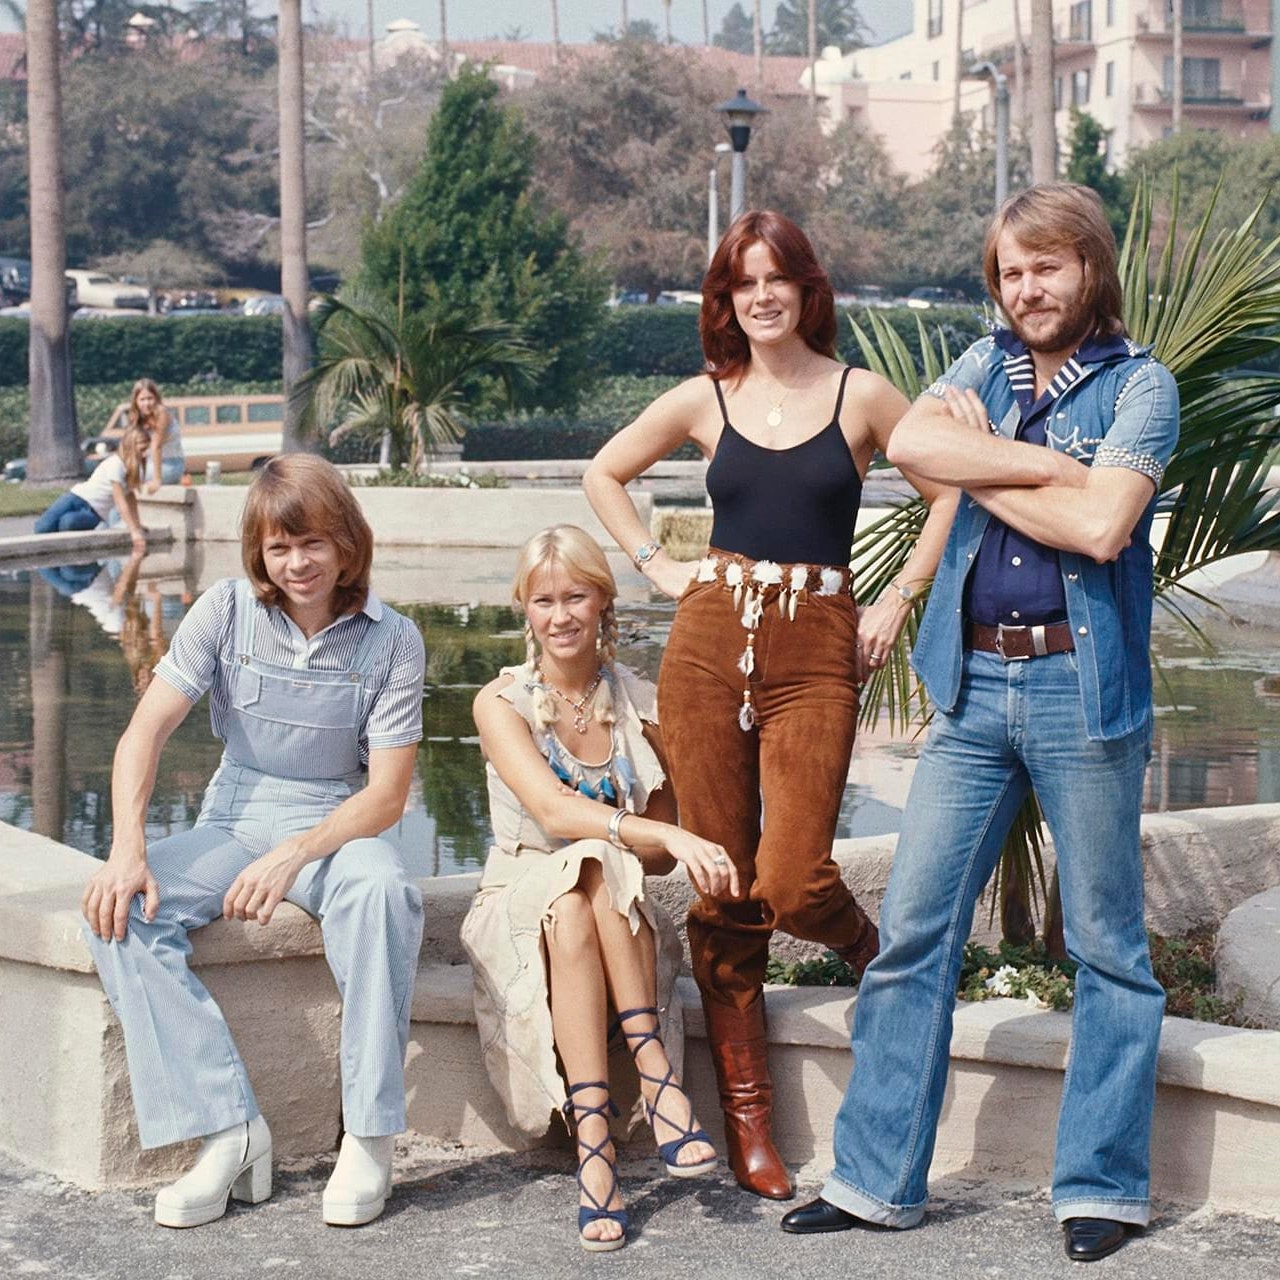 Взгляните на эти архивные фотографии группы ABBA и перенеситесь в эпоху диско